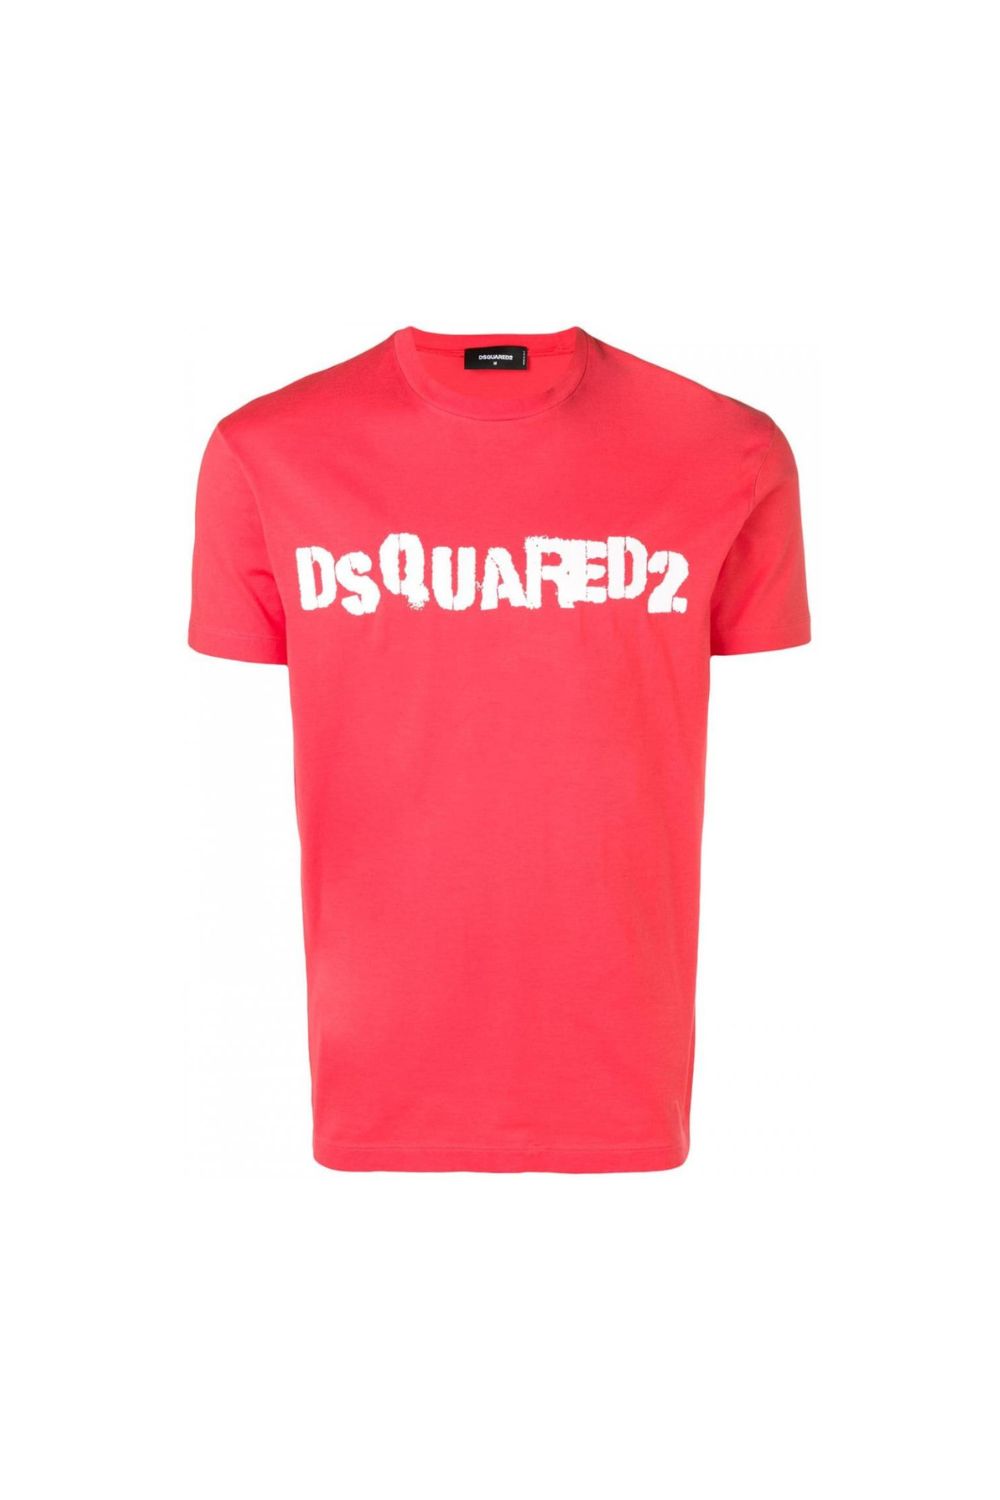 T-Shirt Dsquared in cotone con logo